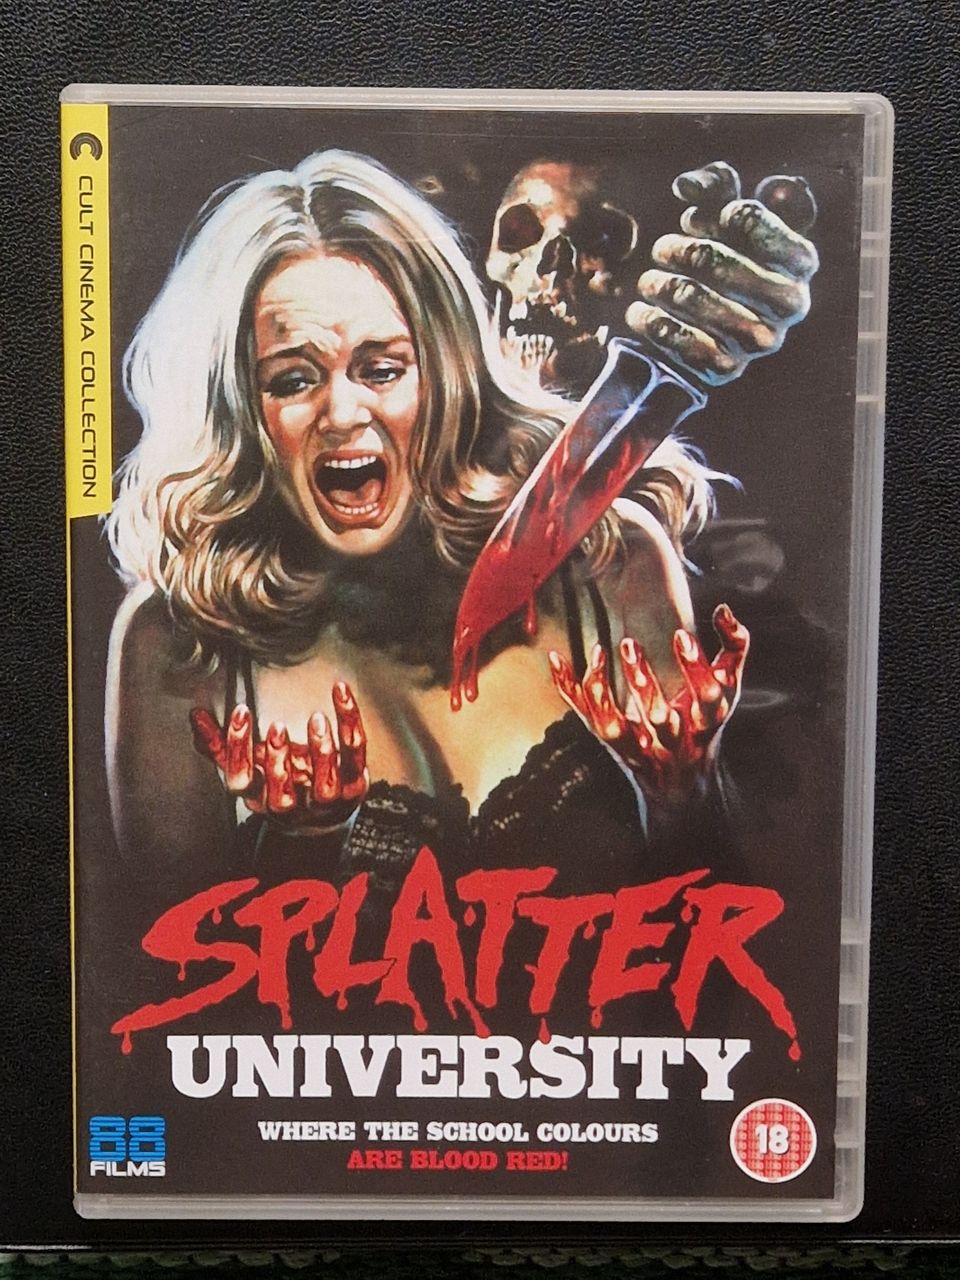 Splatter University - 88films DVD